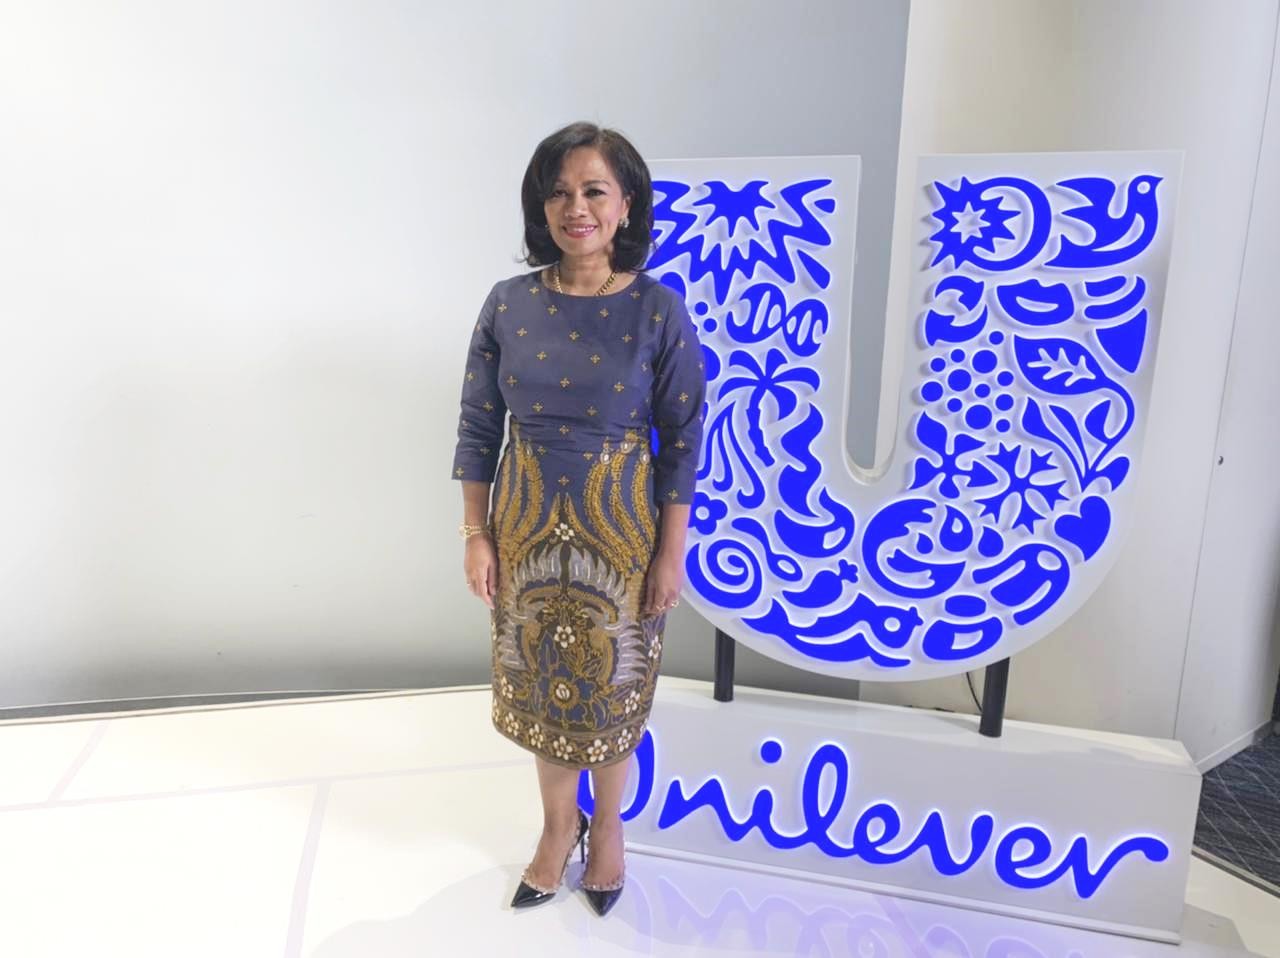 Intip Jejak Karier Ira Noviarti, Presdir Perempuan Unilever Indonesia (Foto: MNC Media)